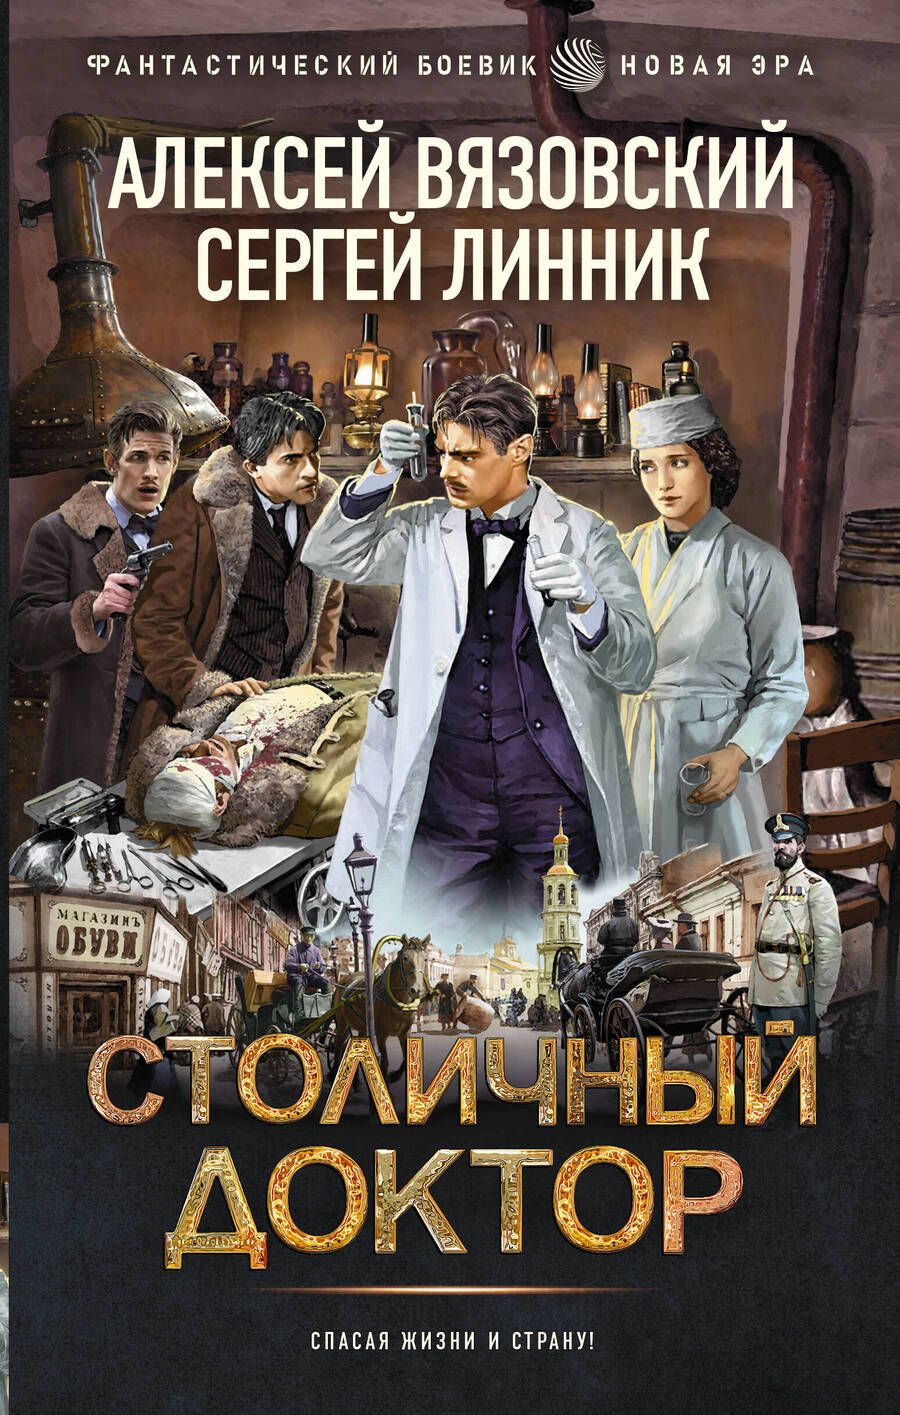 Обложка книги "Вязовский, Линник: Столичный доктор"